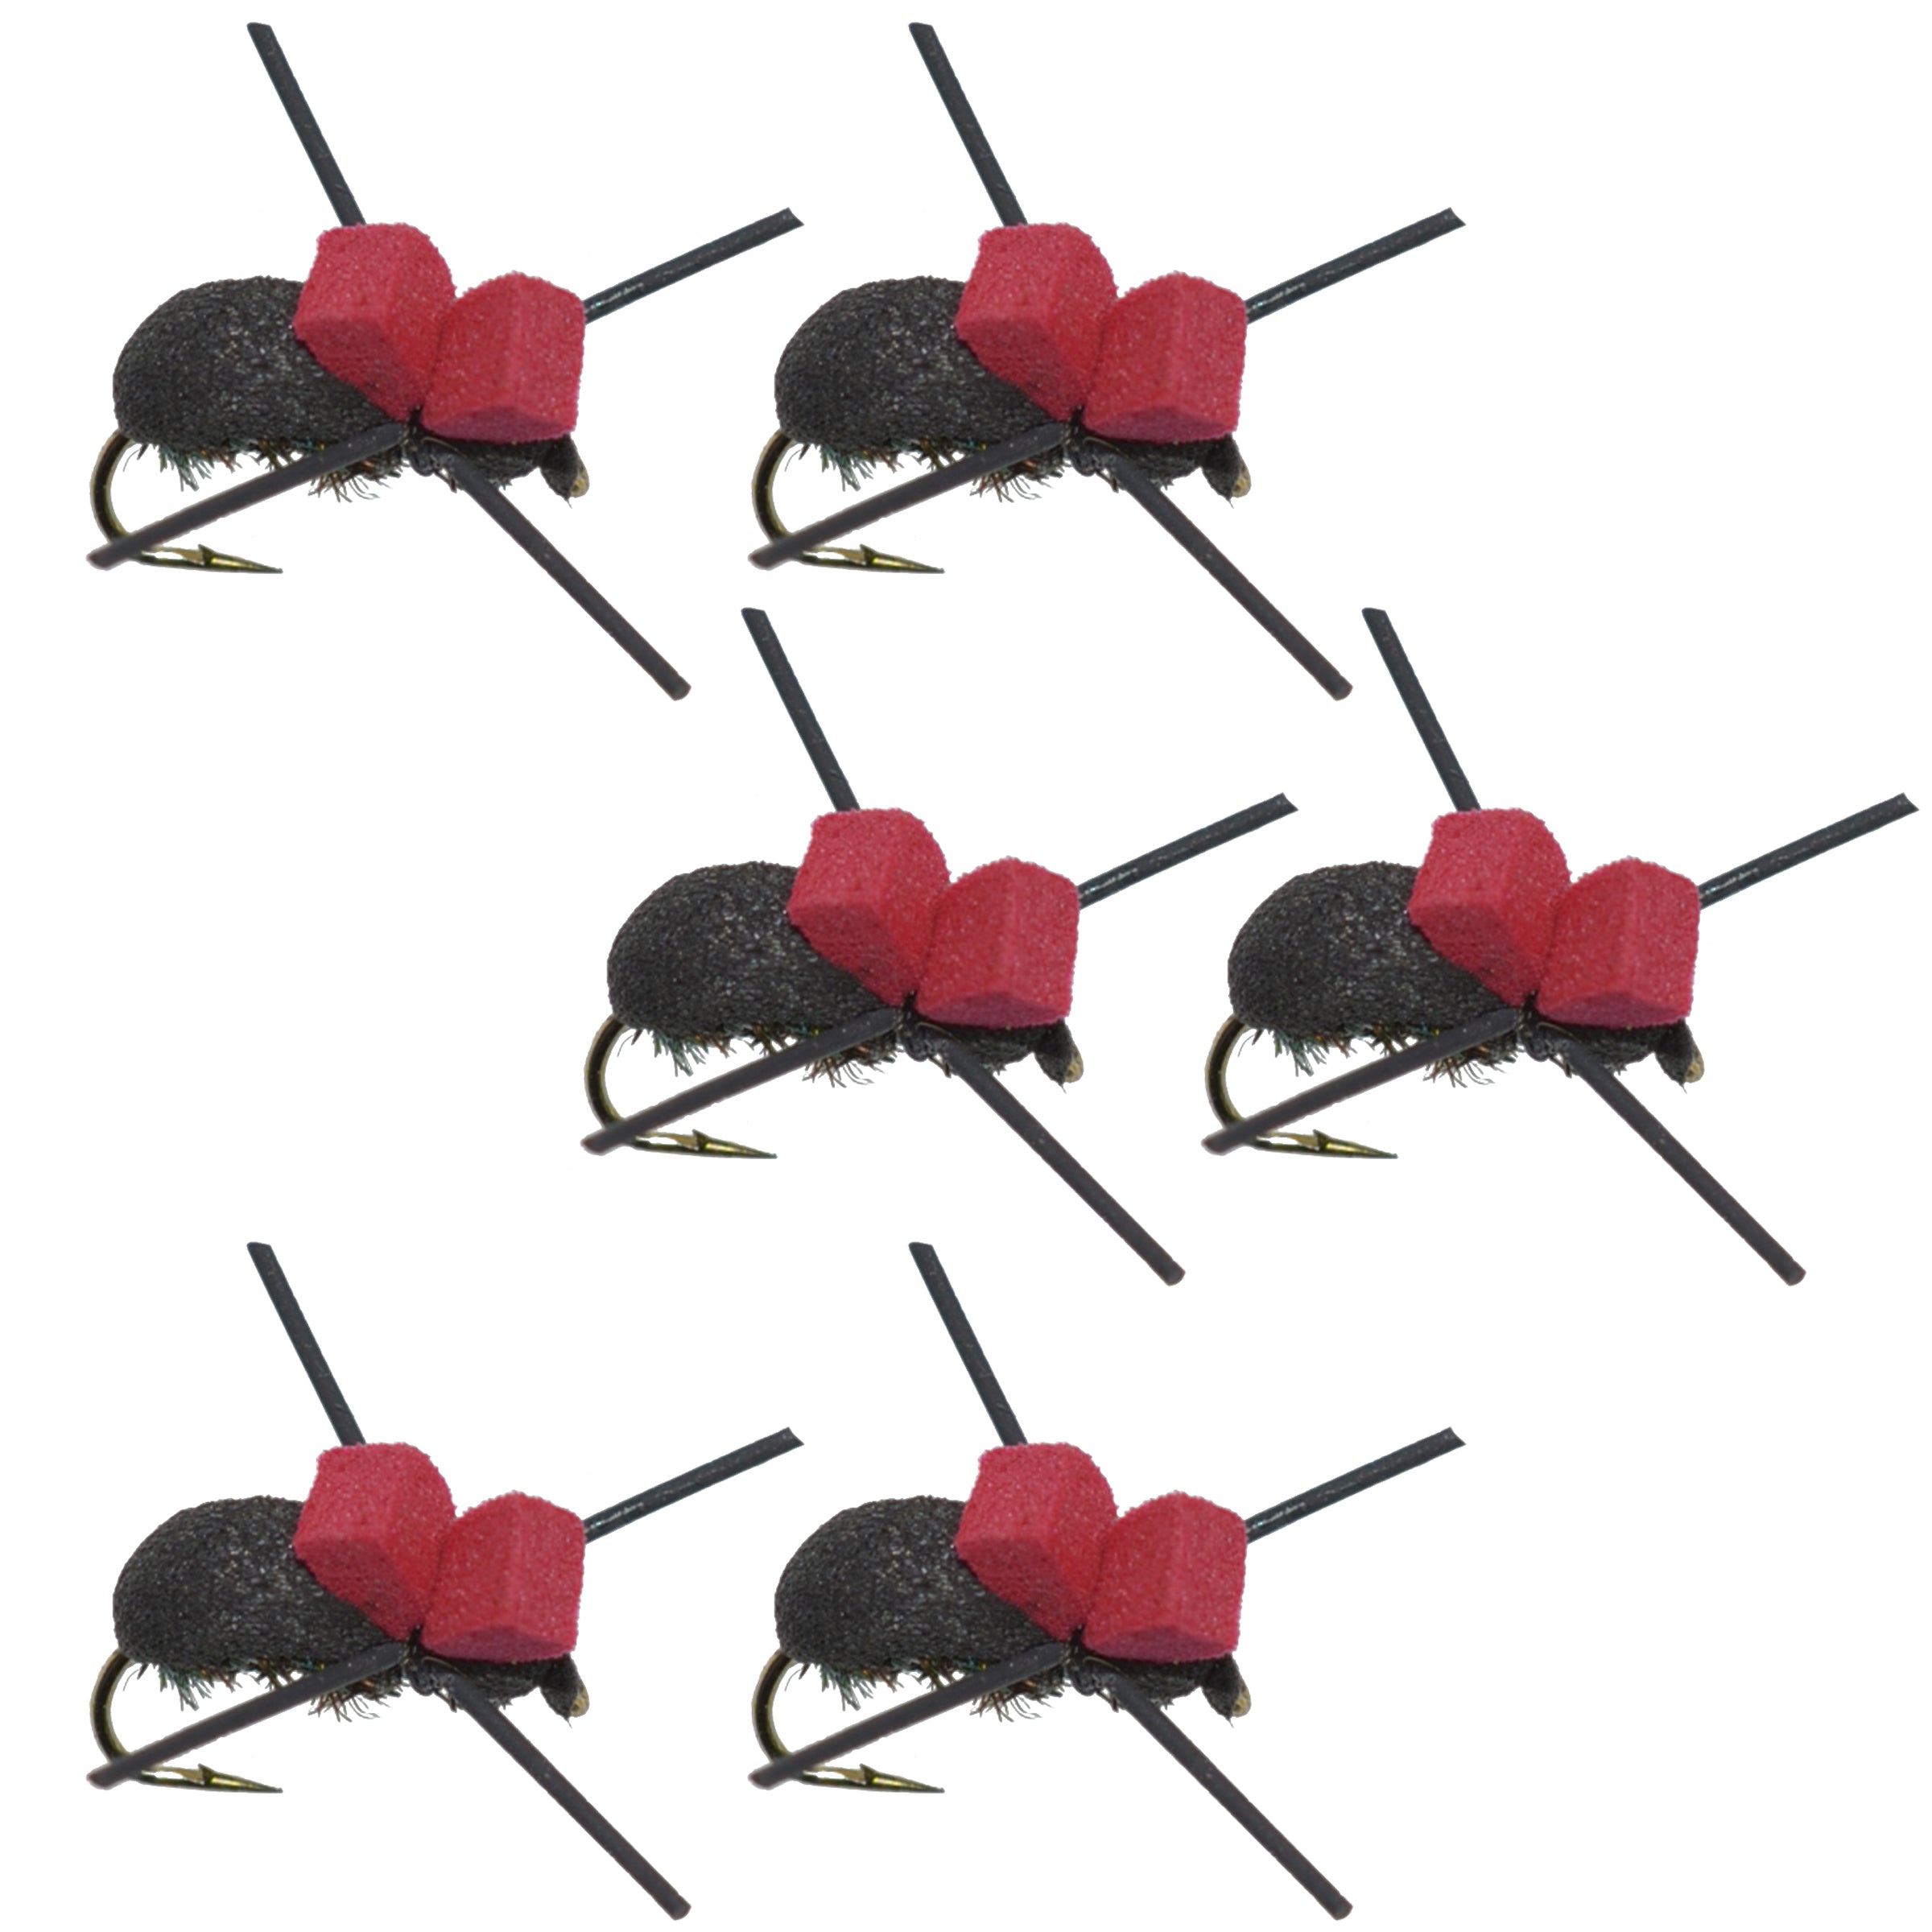 Moscas de pesca con mosca seca para trucha terrestre, escarabajo de espuma negra, parte superior roja, 6 moscas, tamaño 14